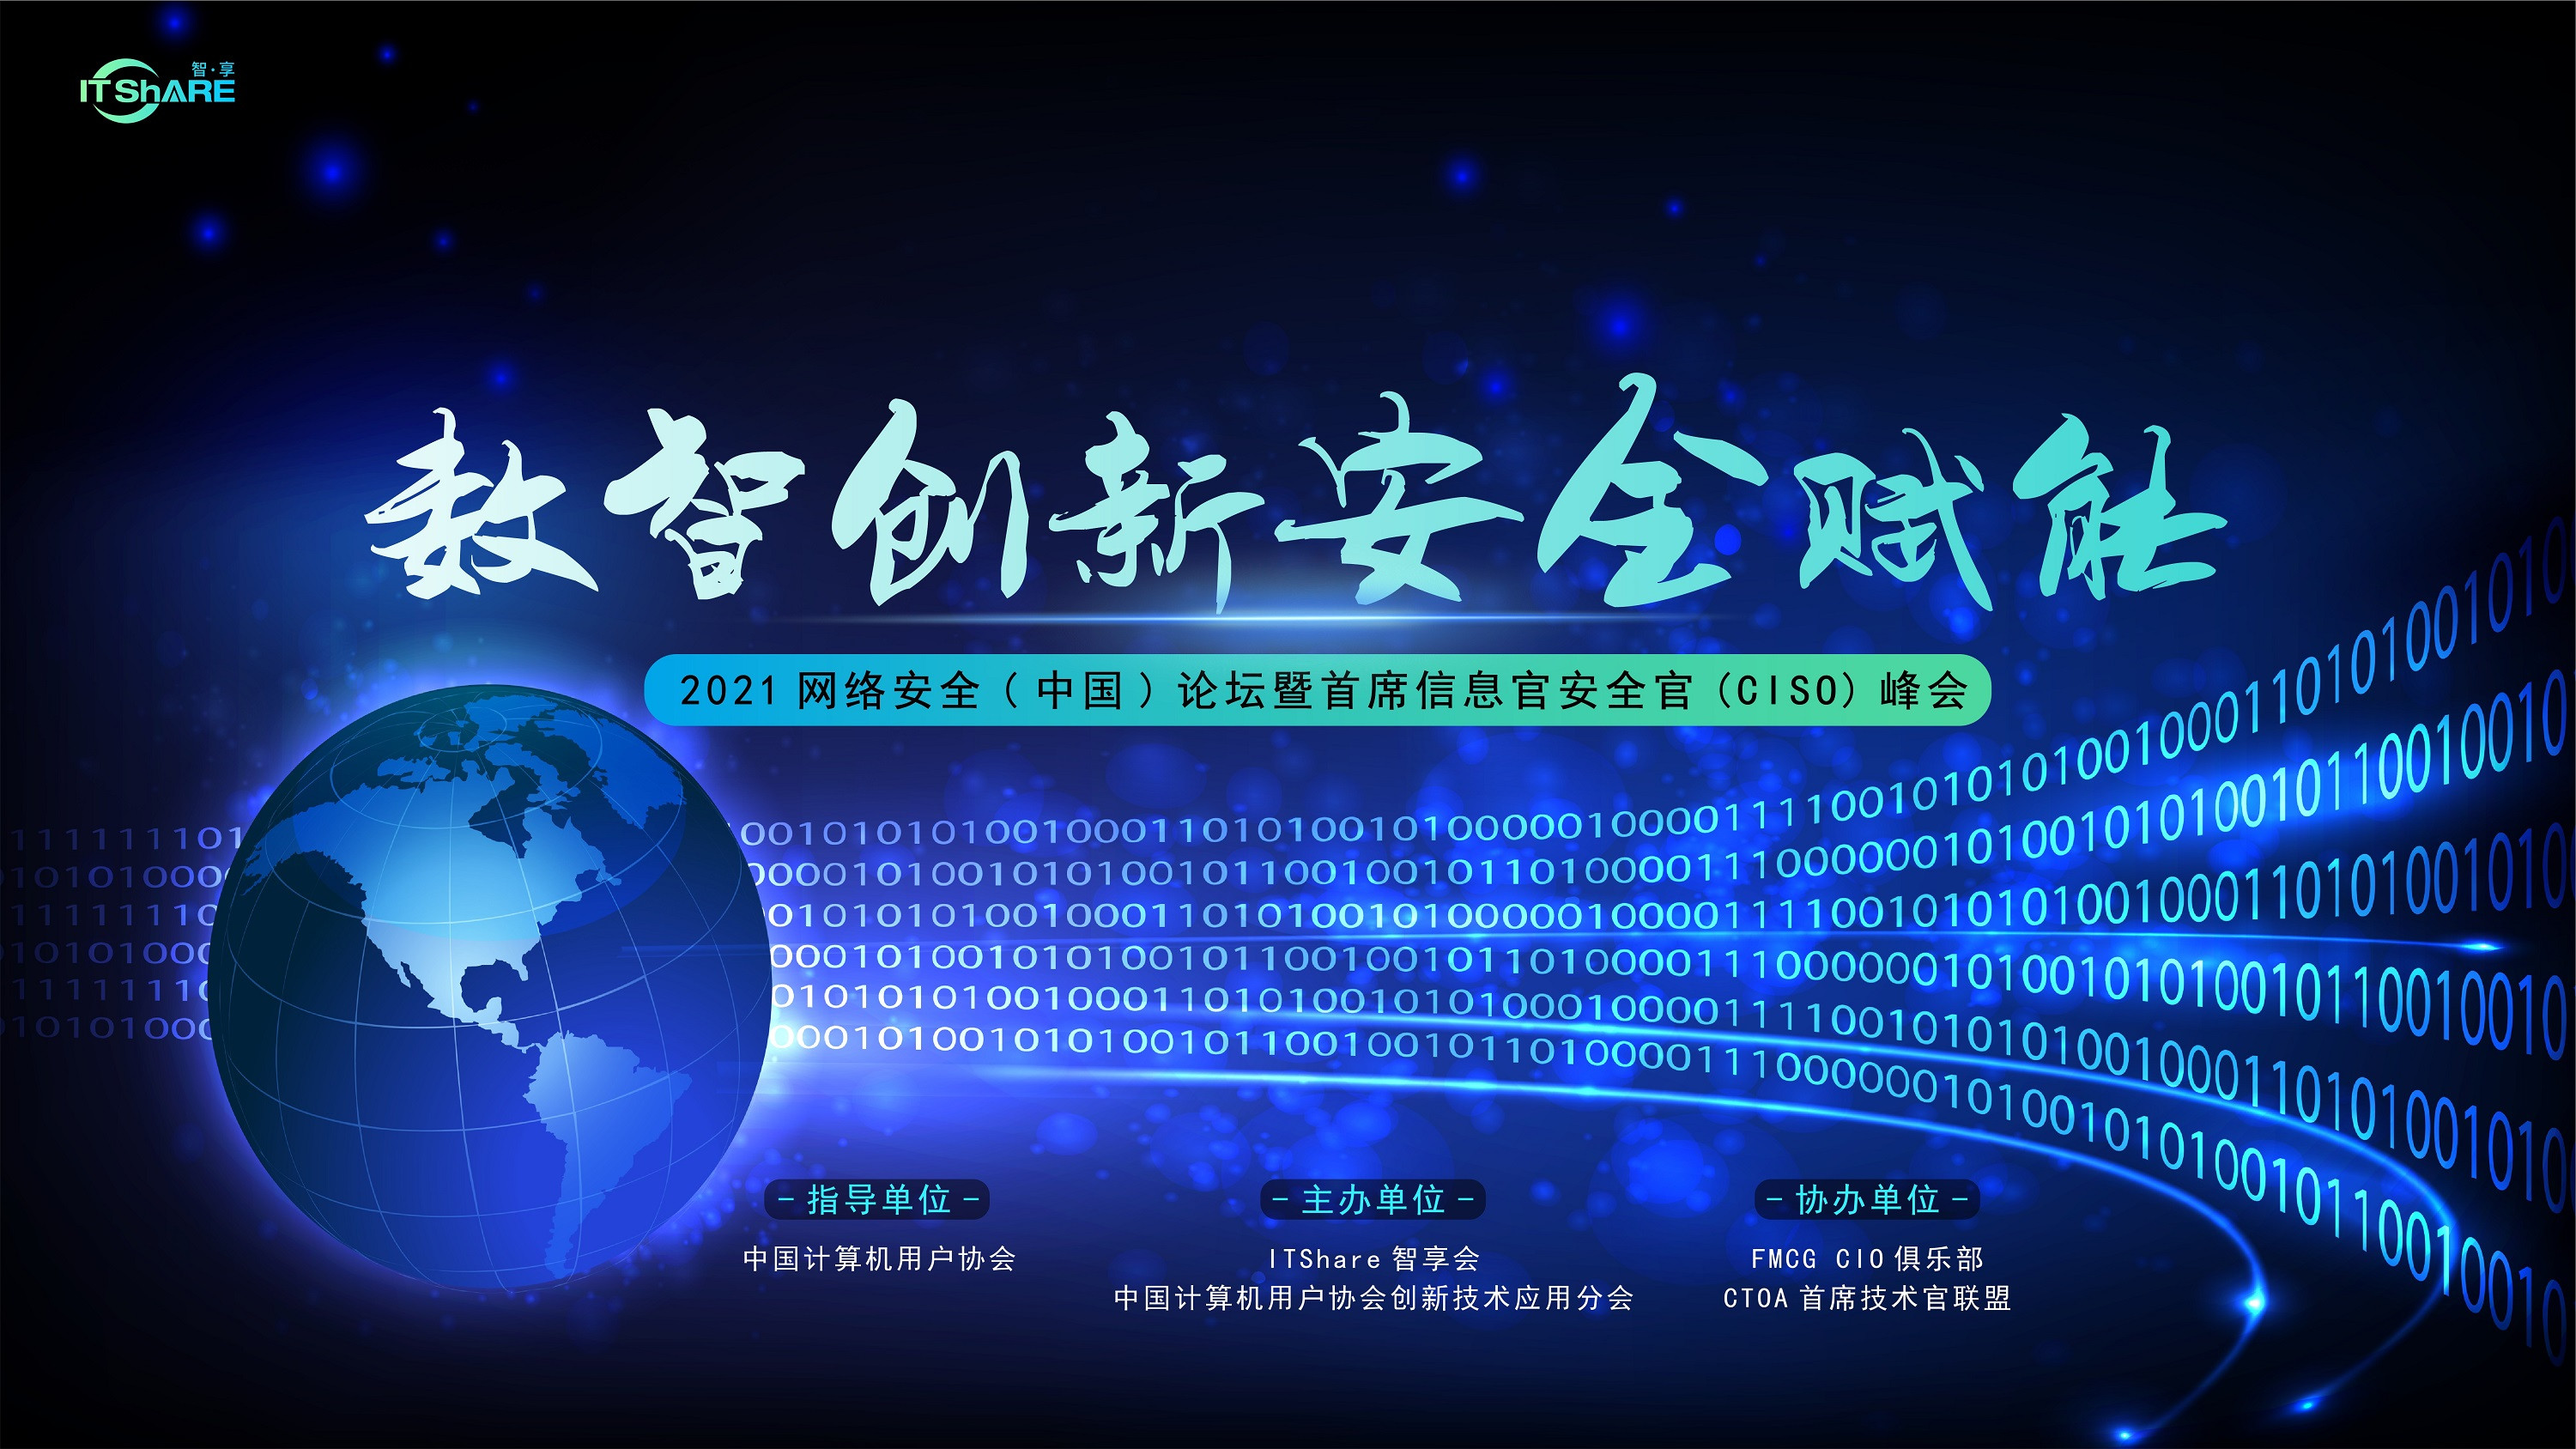 2021網絡安全（中國）論壇暨首席信息安全官（CISO）峰會